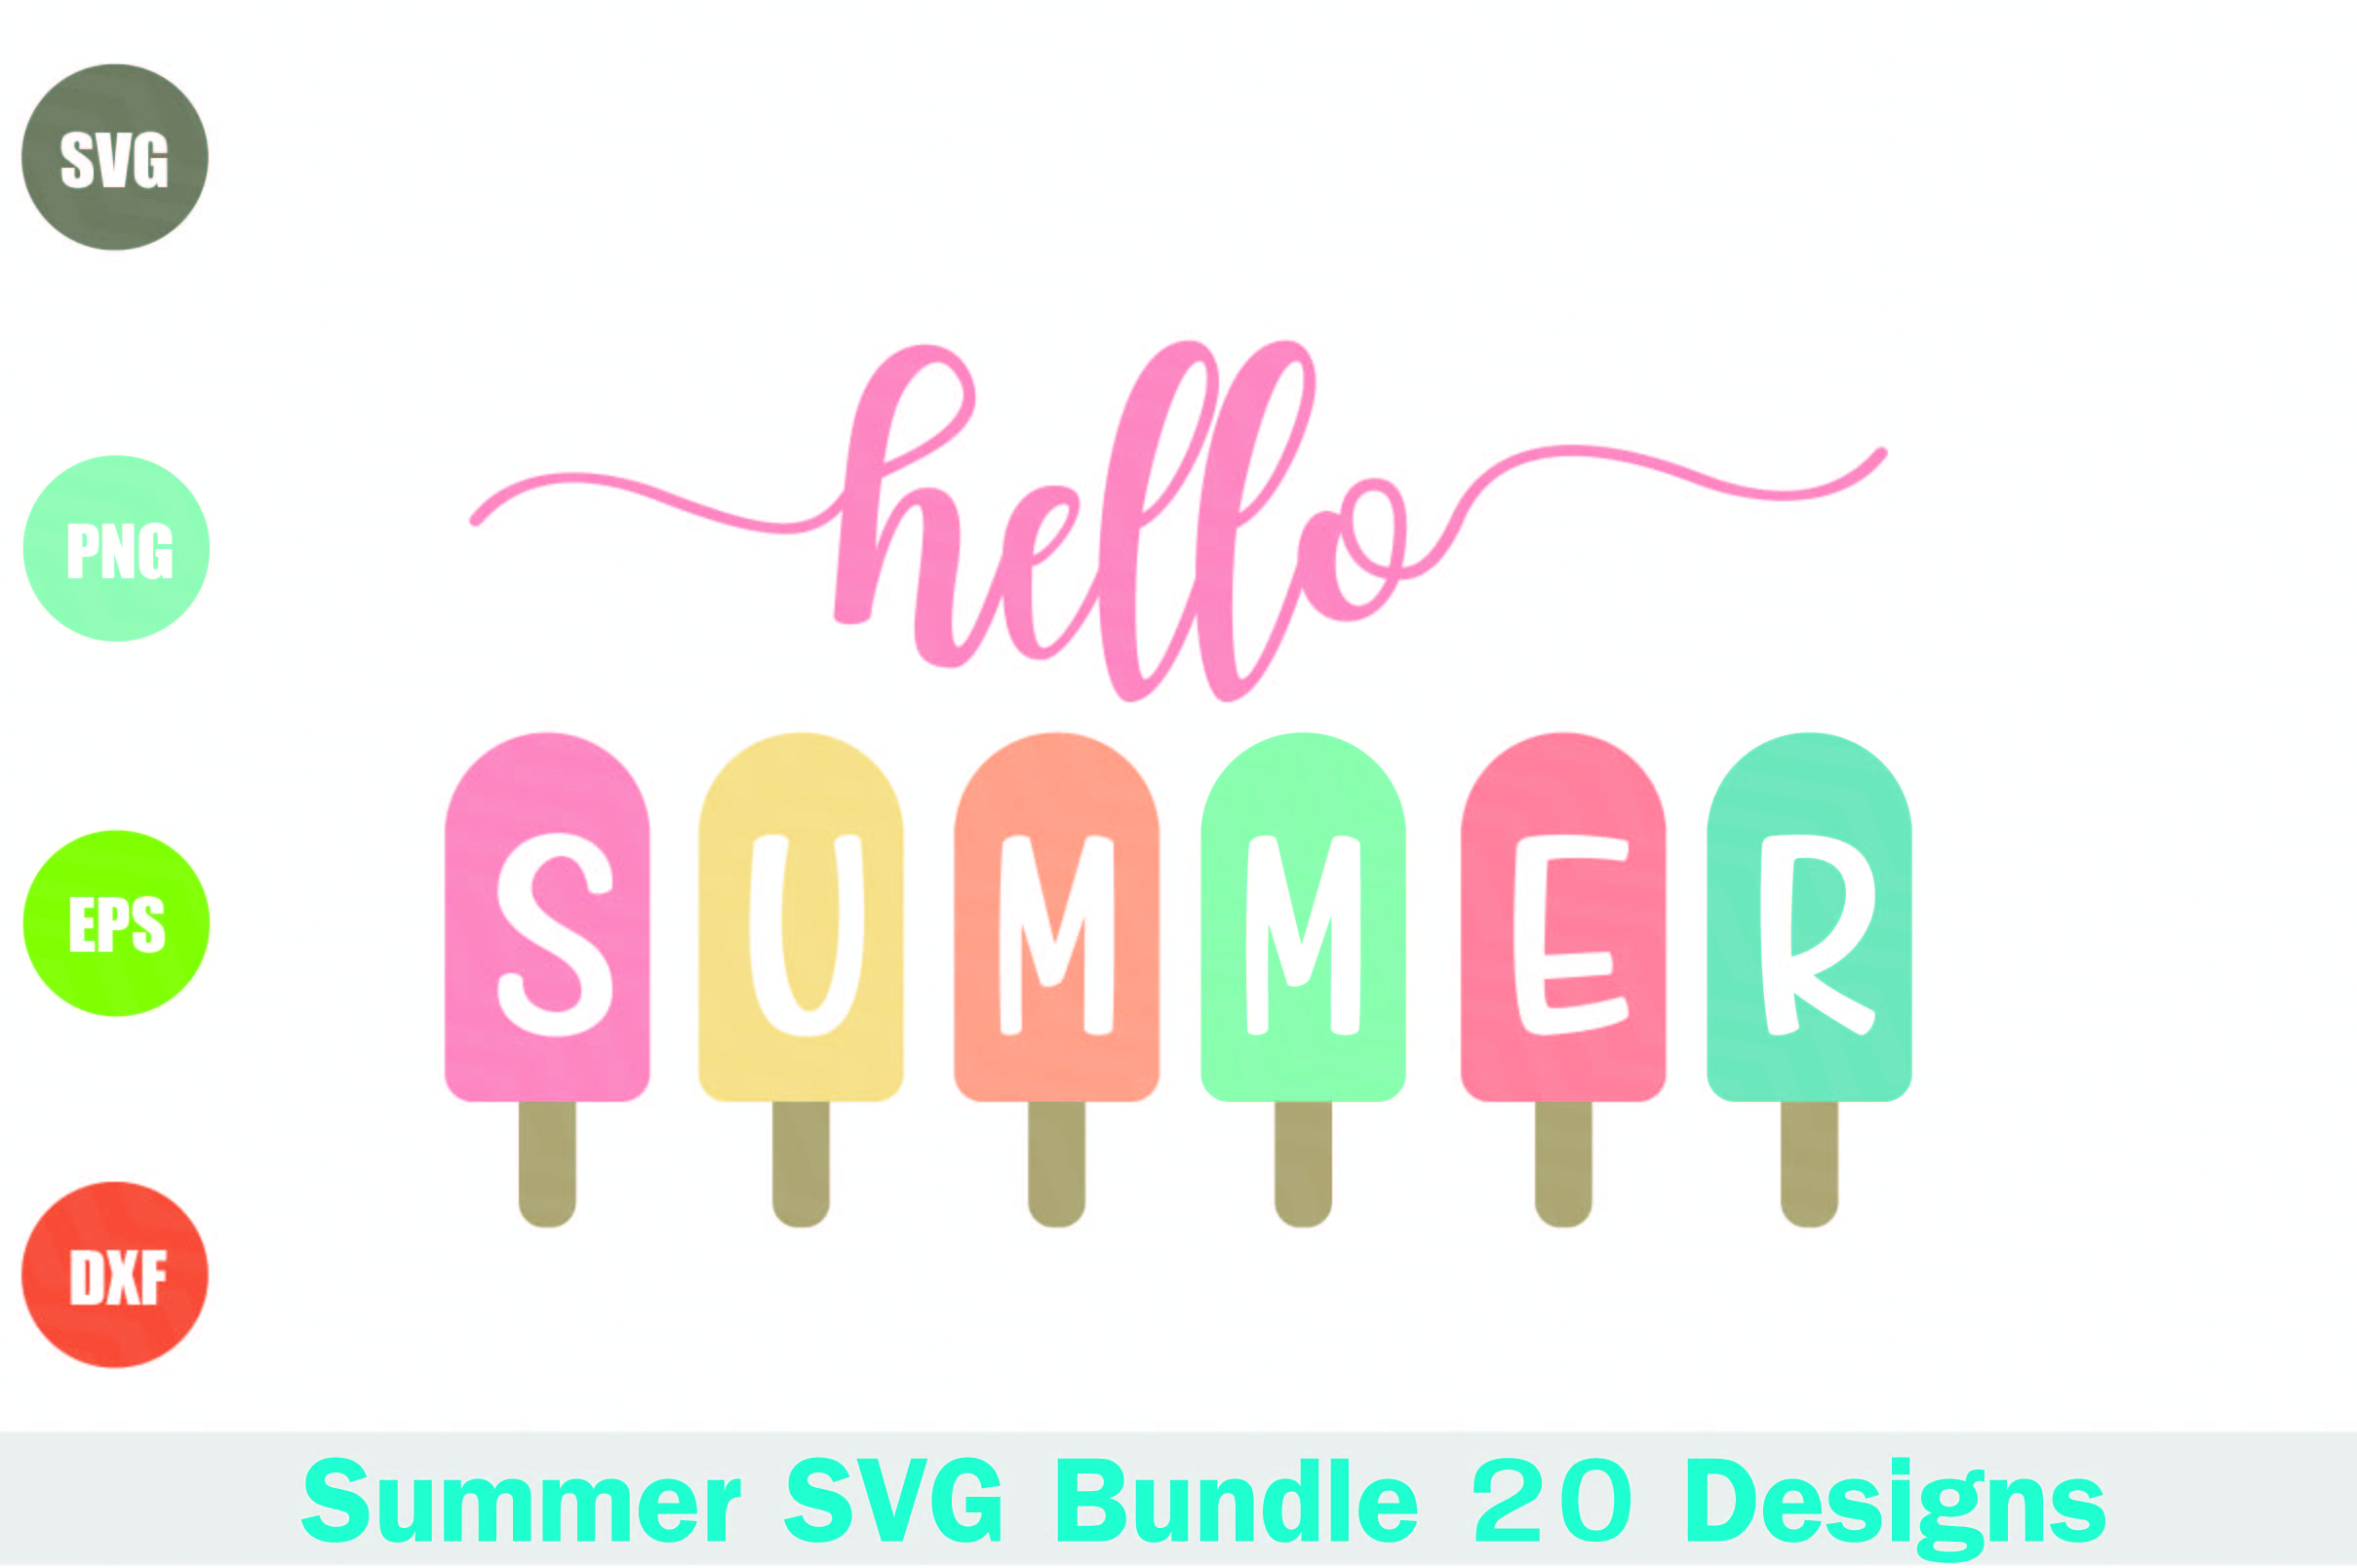 Summer SVG Bundle 20 Designs (277825) | SVGs | Design Bundles